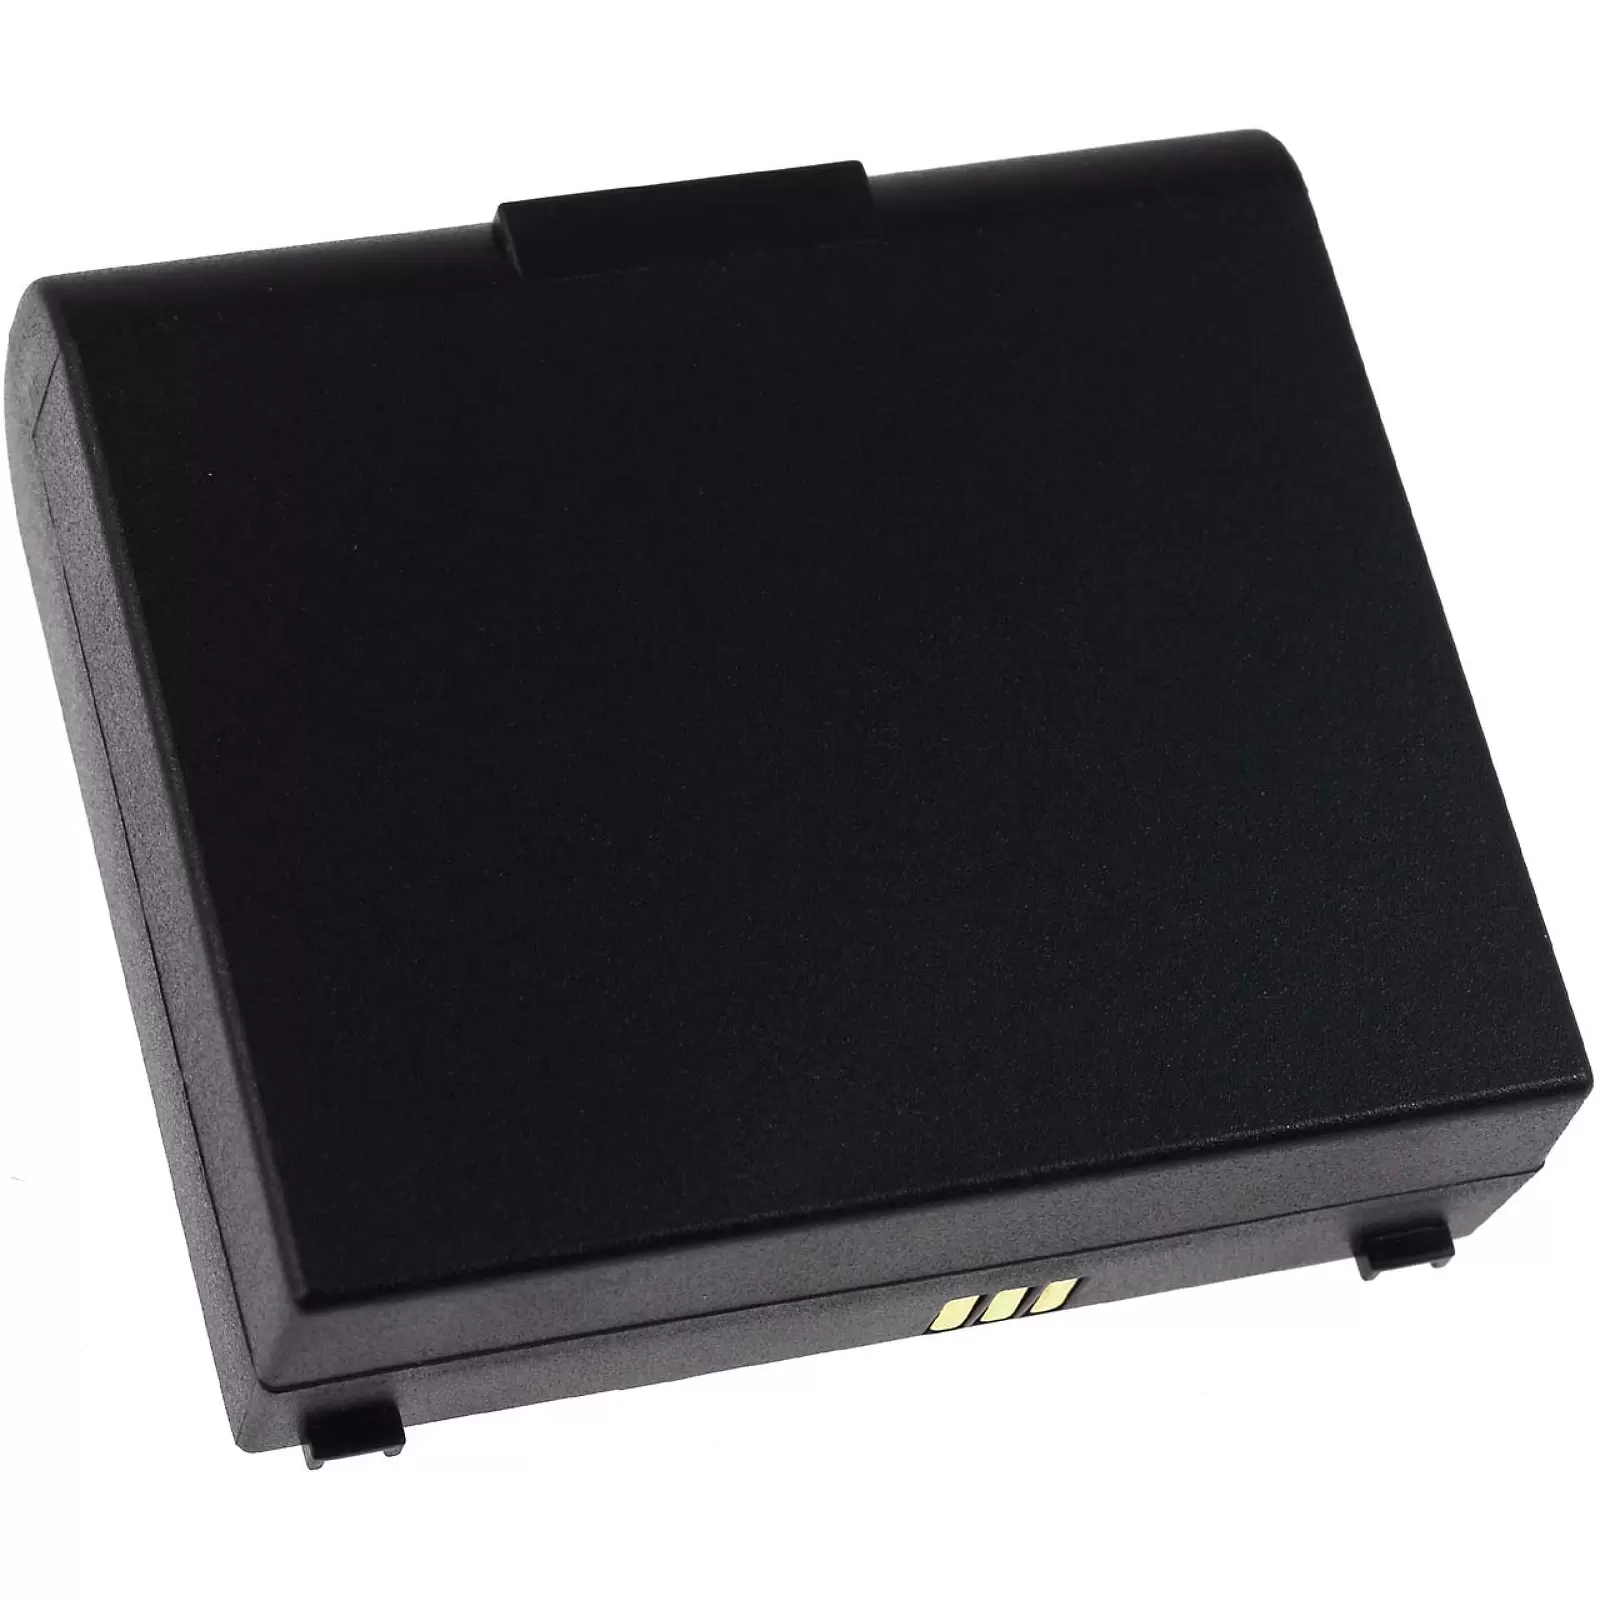 Powerakku für Vermessungsgerät Trimble Mobile Mapper 120 / Typ PM5